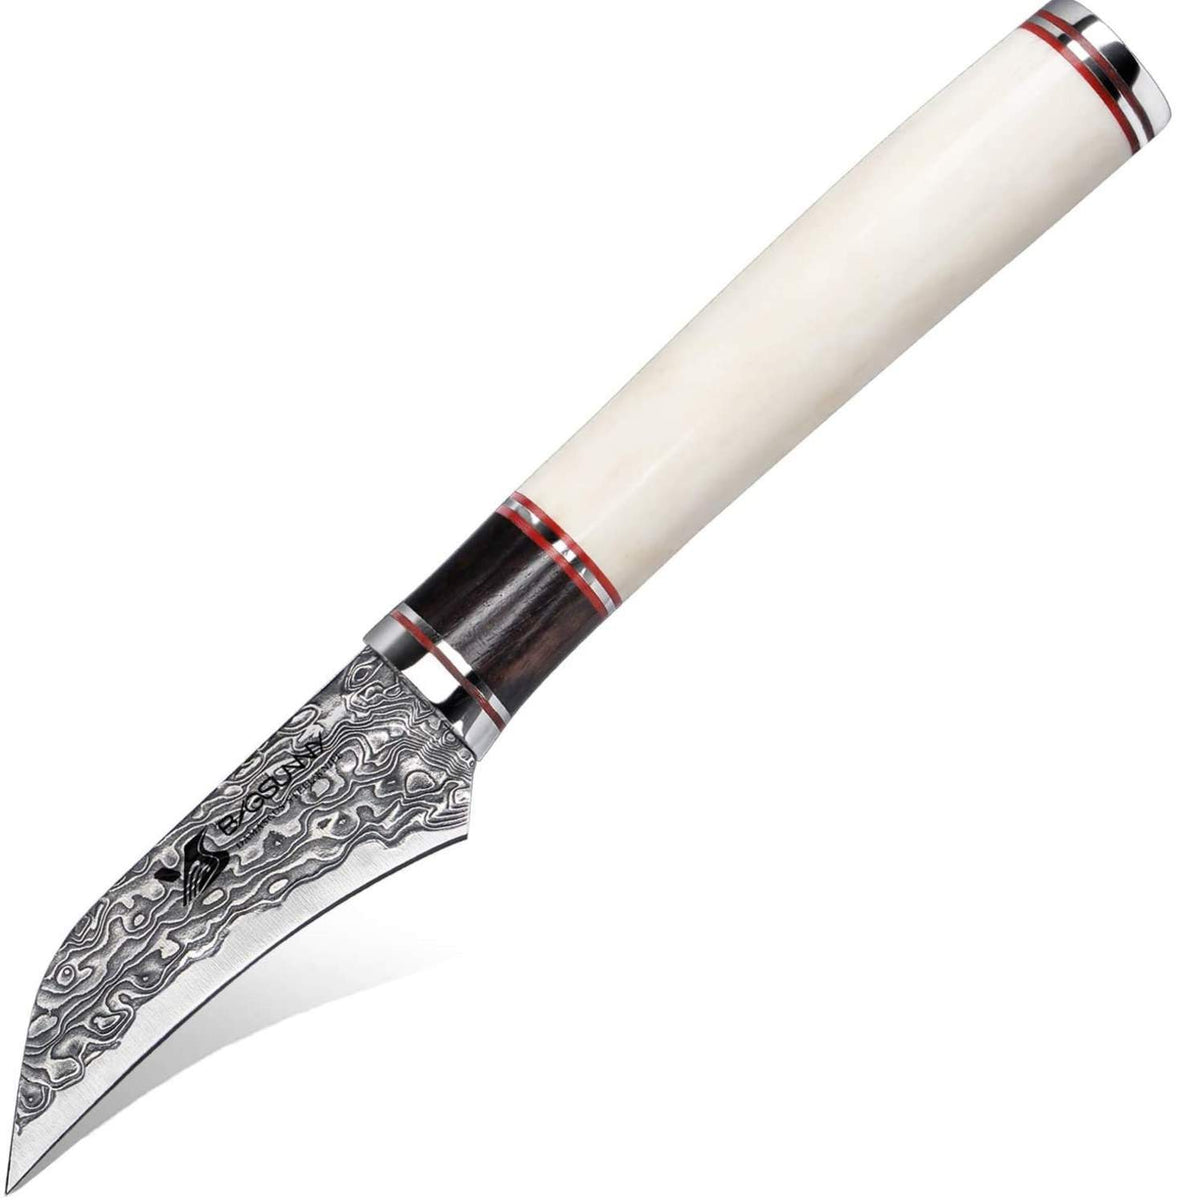 http://toroscookware.com/cdn/shop/products/3-supper-damascus-steel-handmade-birds-beak-paring-knife-ox-bone-handle-731686_1200x1200.jpg?v=1599406810